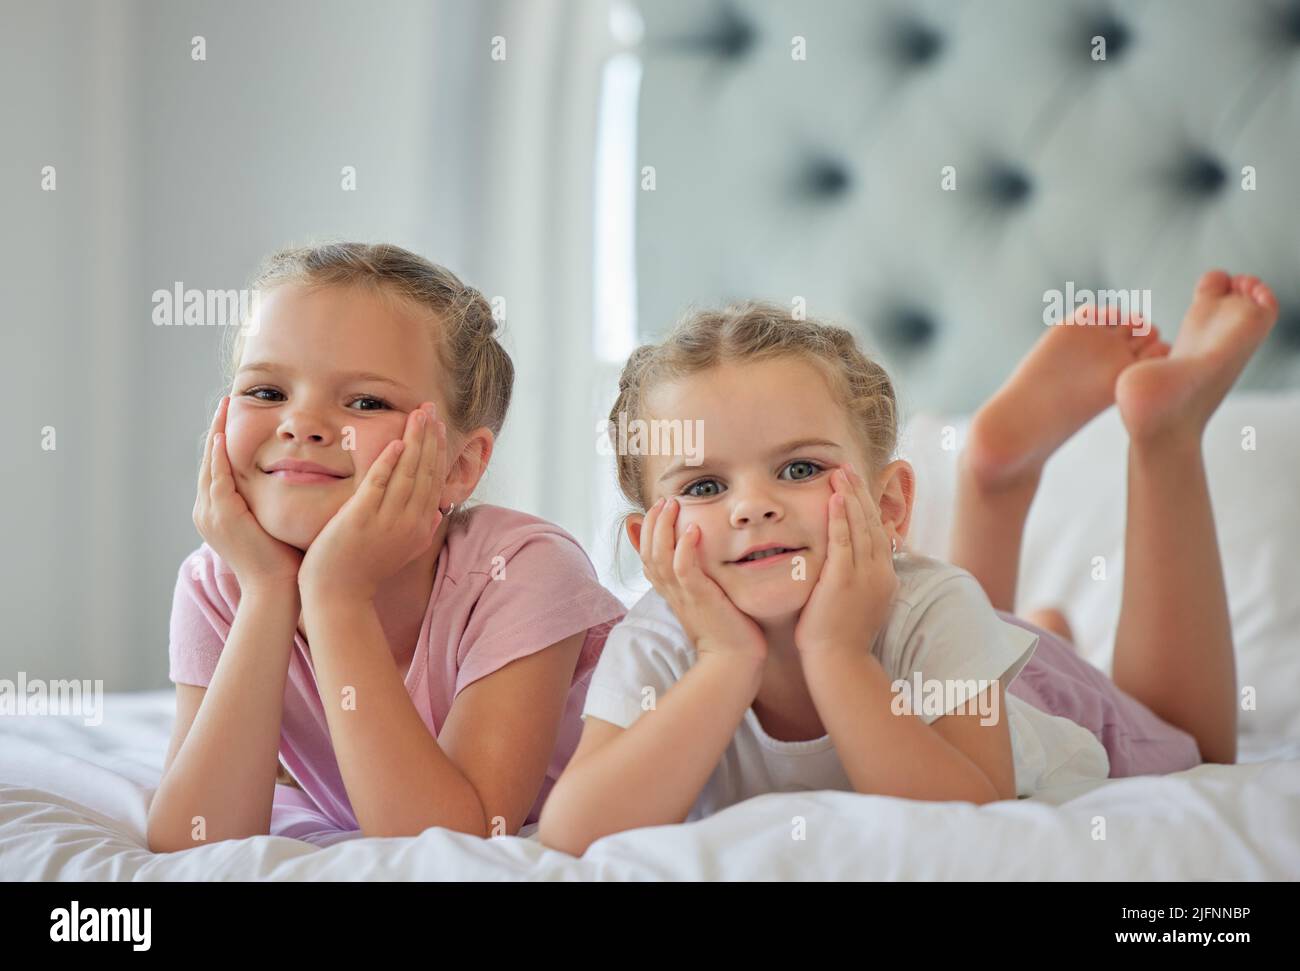 Portrait de deux petites filles allongé sur un lit à la maison. Les filles souriantes se détendent et ont l'air confortables, deux sœurs blanches blondes aiment passer du temps au lit Banque D'Images